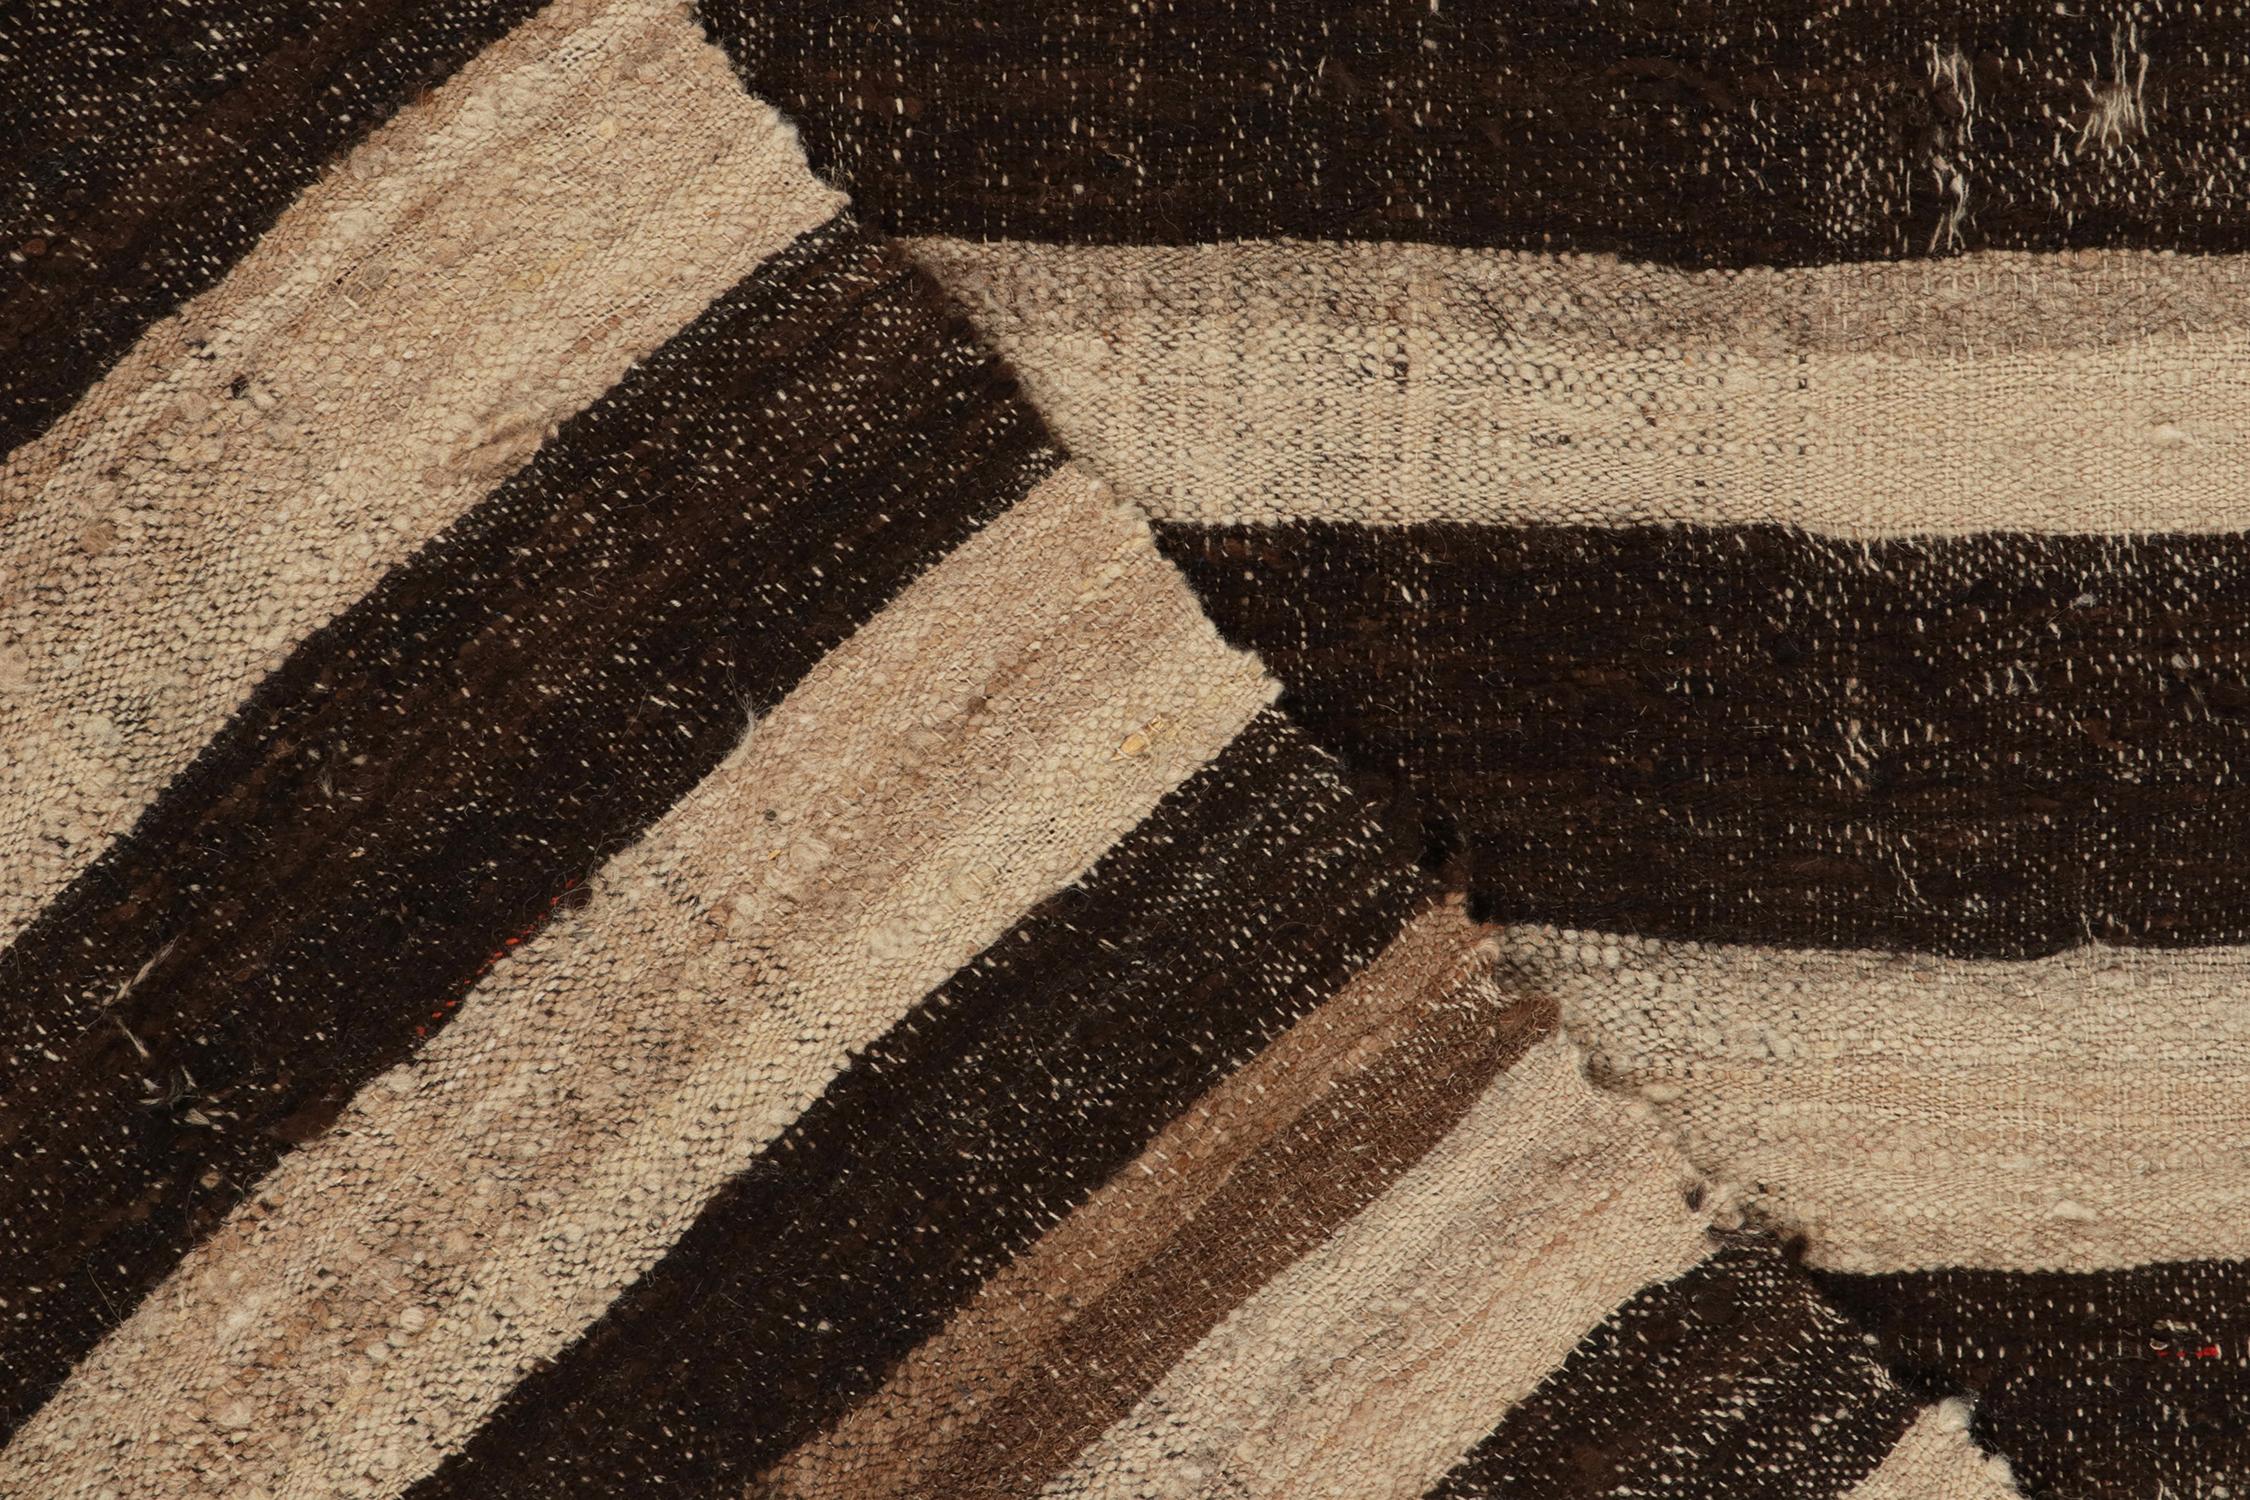 Wool 1950s, Vintage Persian Kilim Rug in Panel, Beige-Brown Stripes by Rug & Kilim For Sale